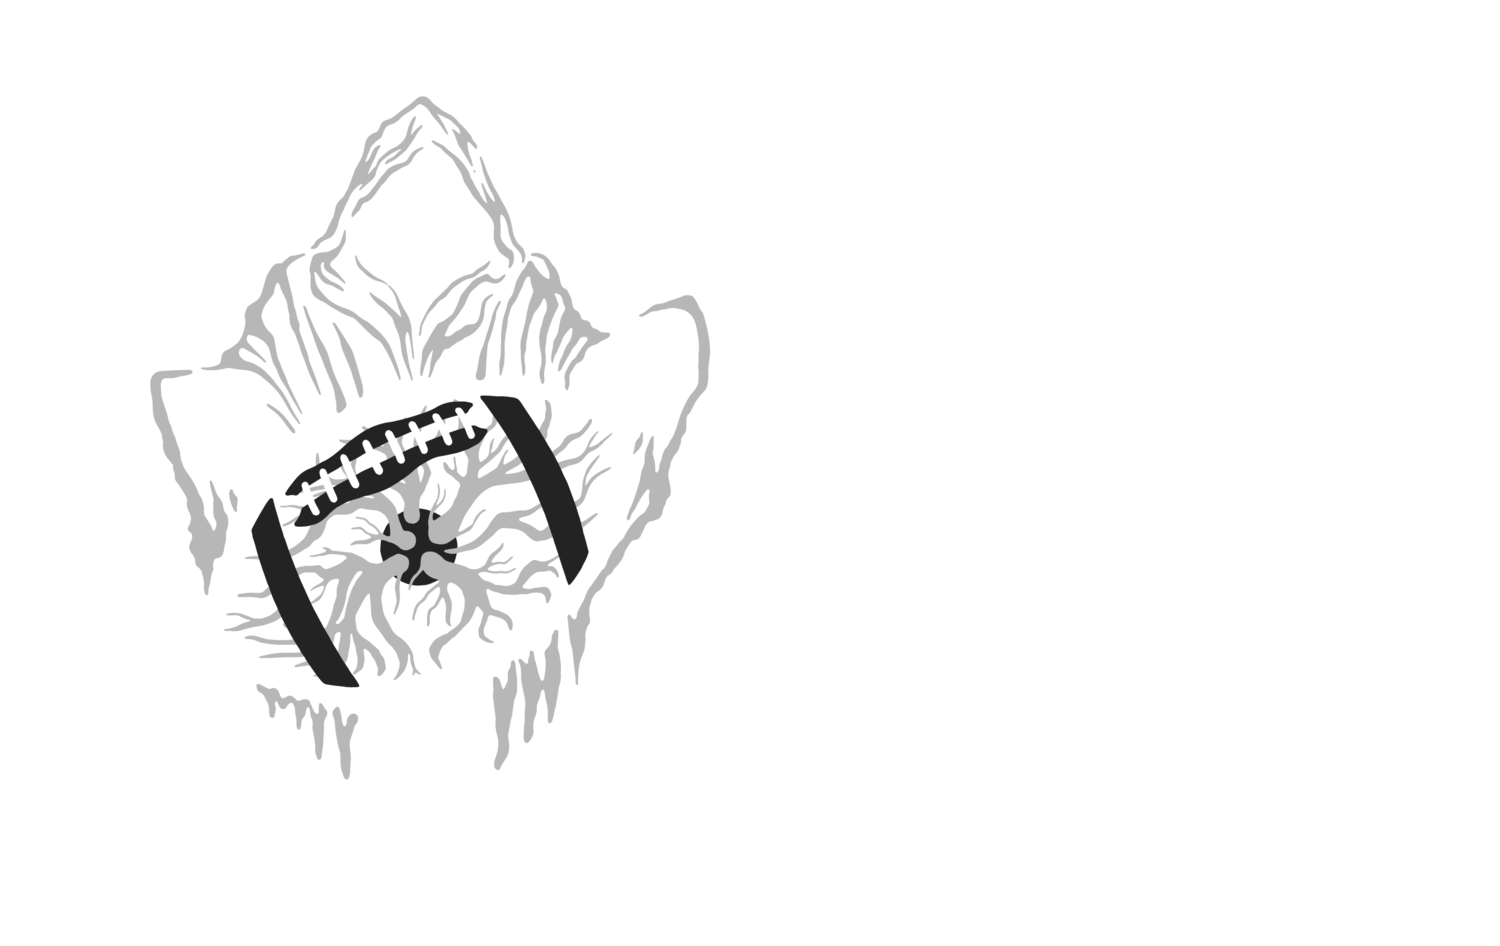 www.thecrystalballer.club